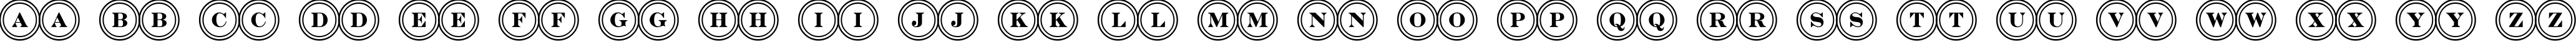 Пример написания английского алфавита шрифтом a_DiscoSerifDbl